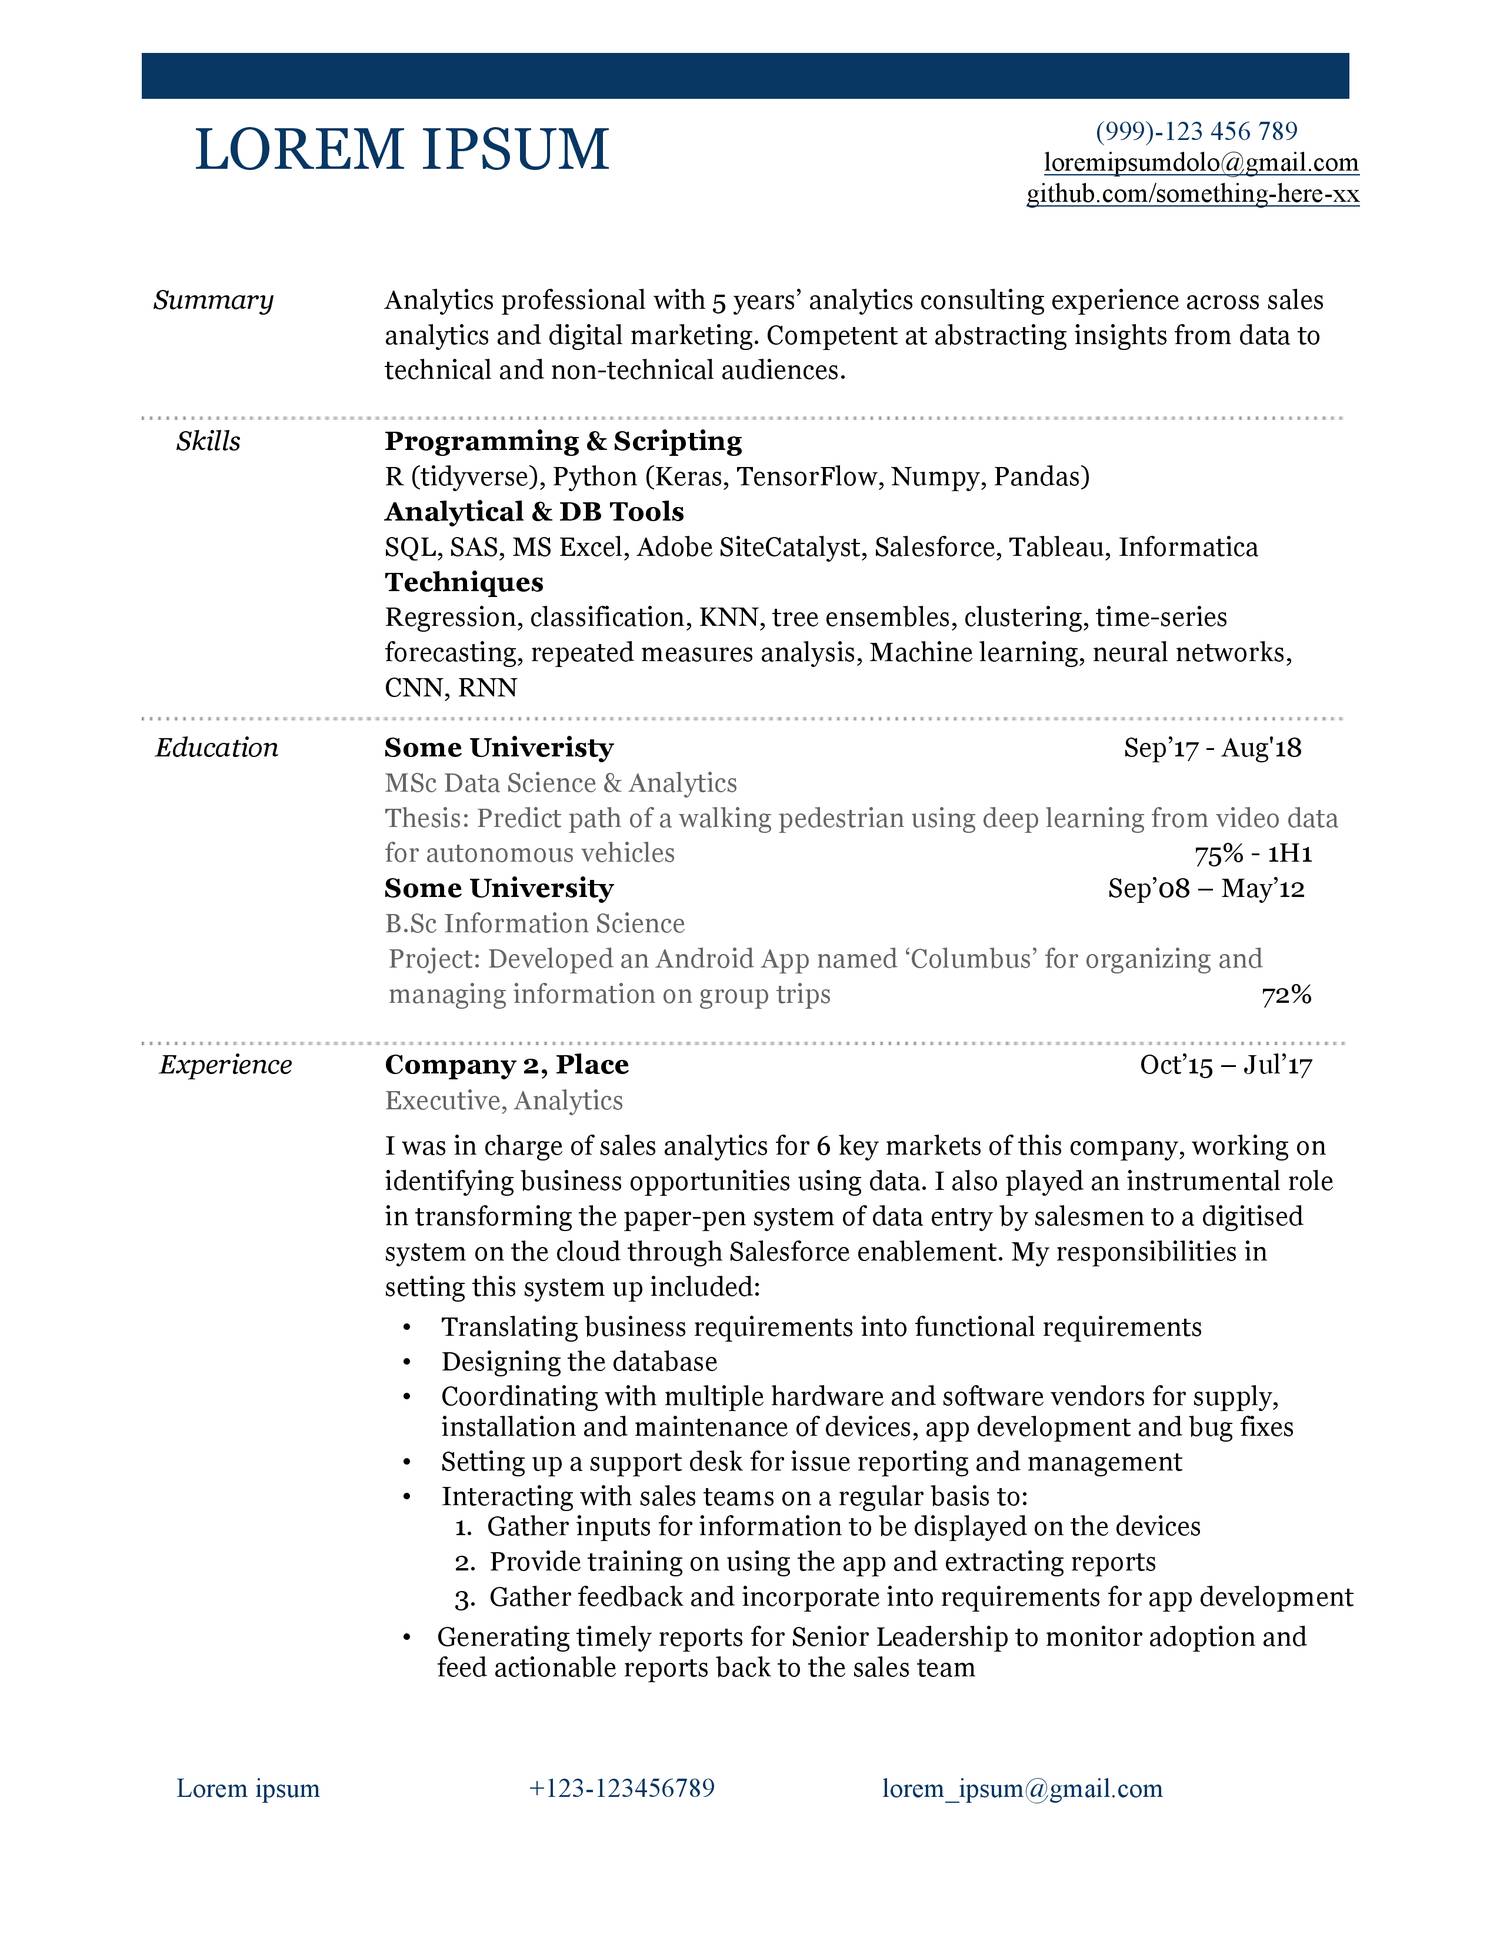 old resume format download pdf